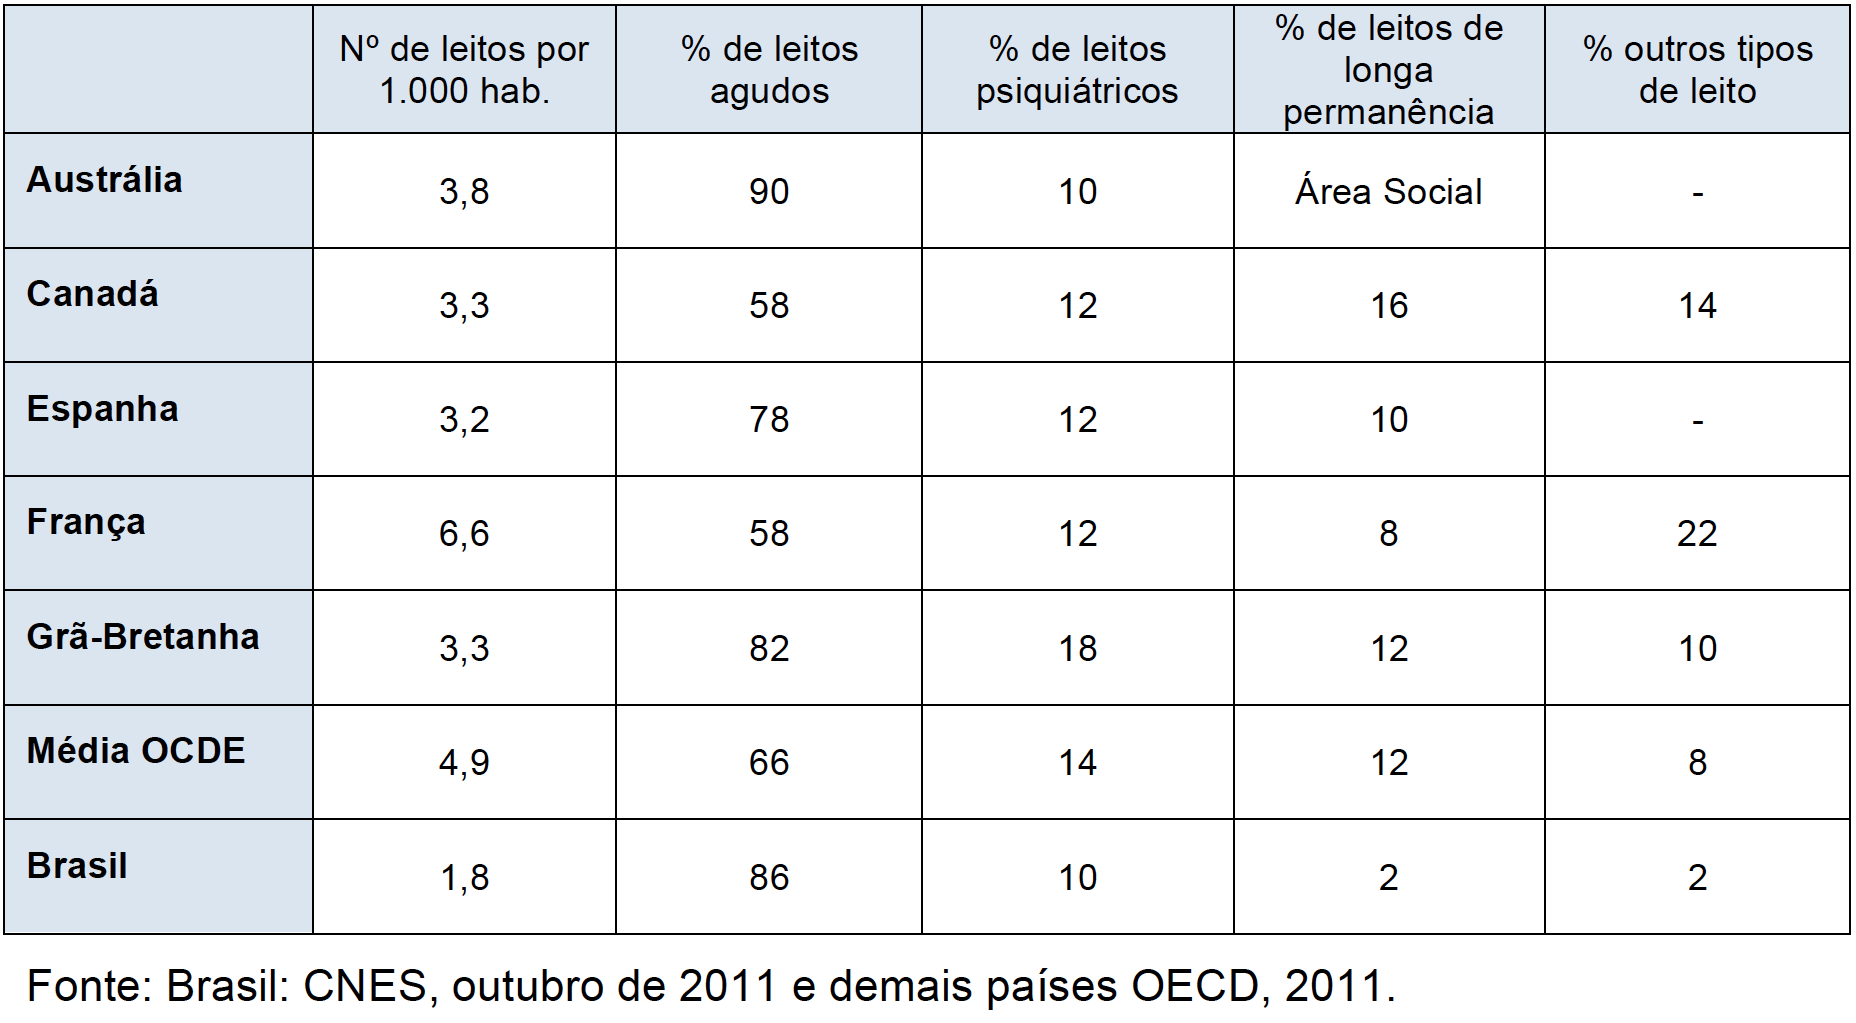 Quadro 6 - Comparativo do número de leitos e sua distribuição percentual entre as diferentes tipologias de cuidado, nos países descritos, média da OCDE e o Brasil, 2009 (ou informação mais próxima disponível)